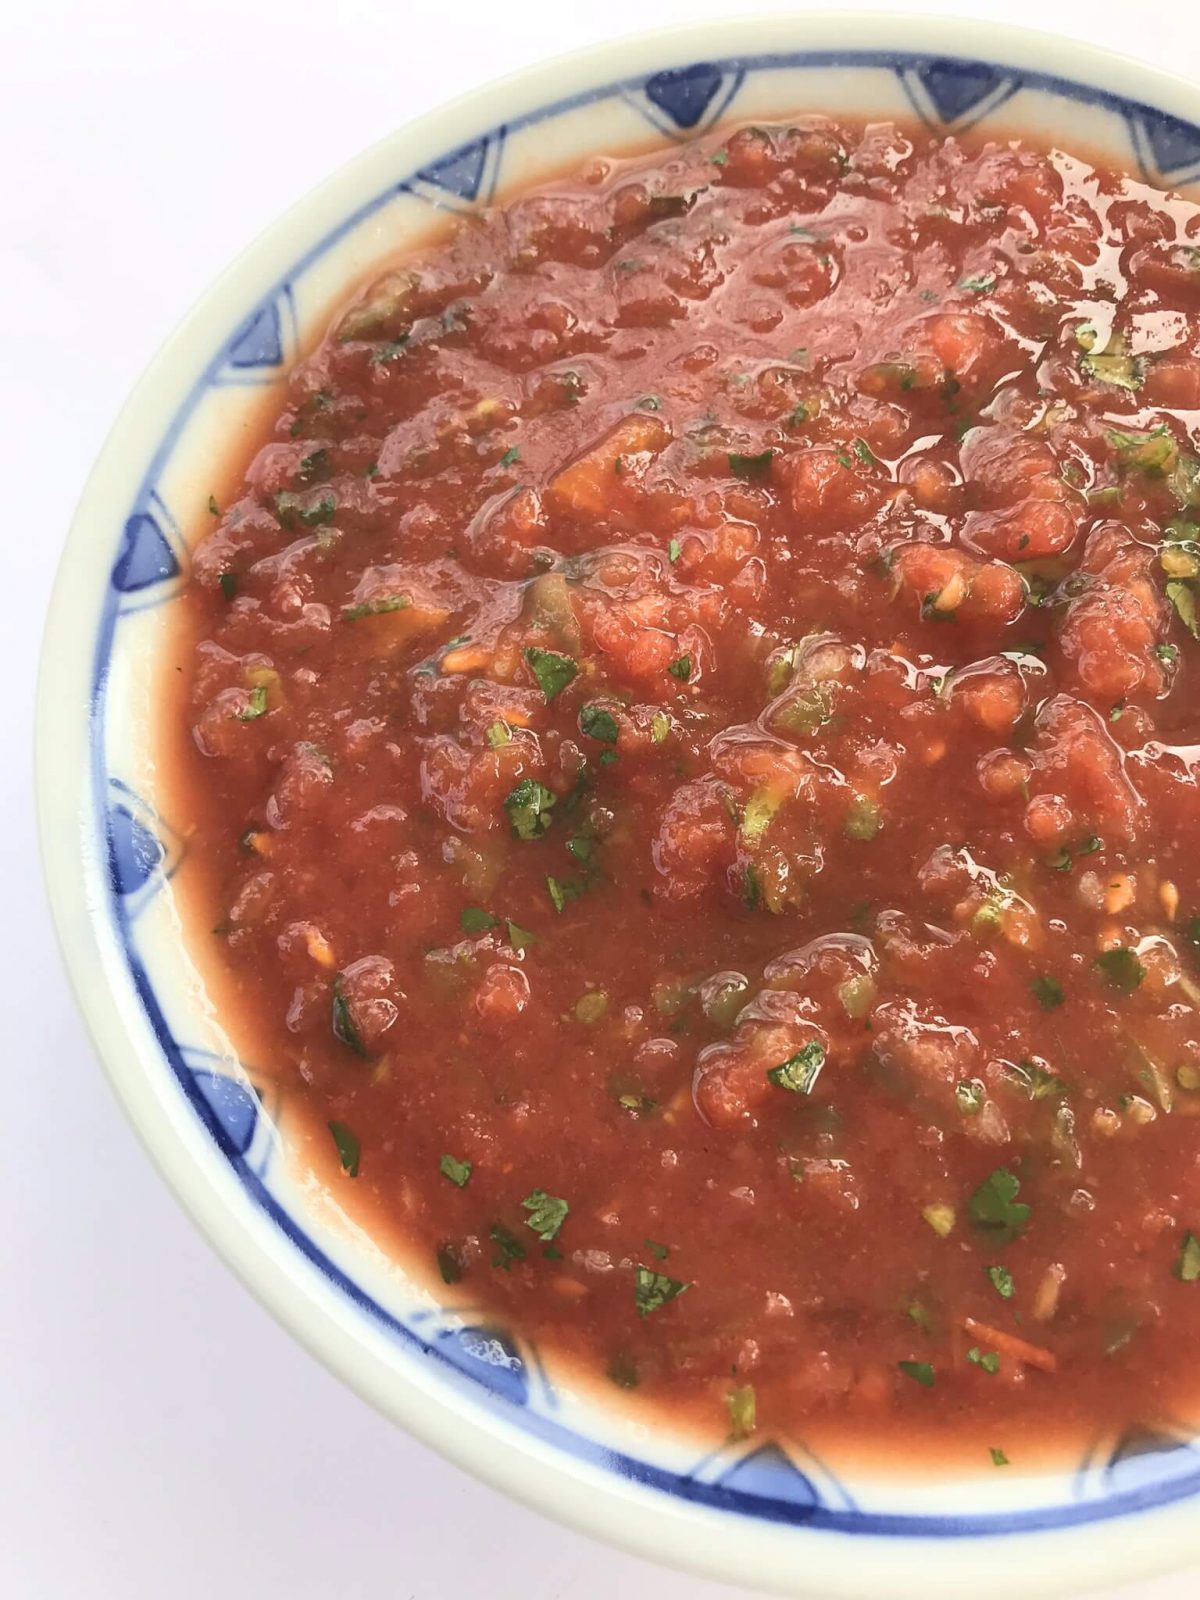 homemade fresh salsa in a bowl